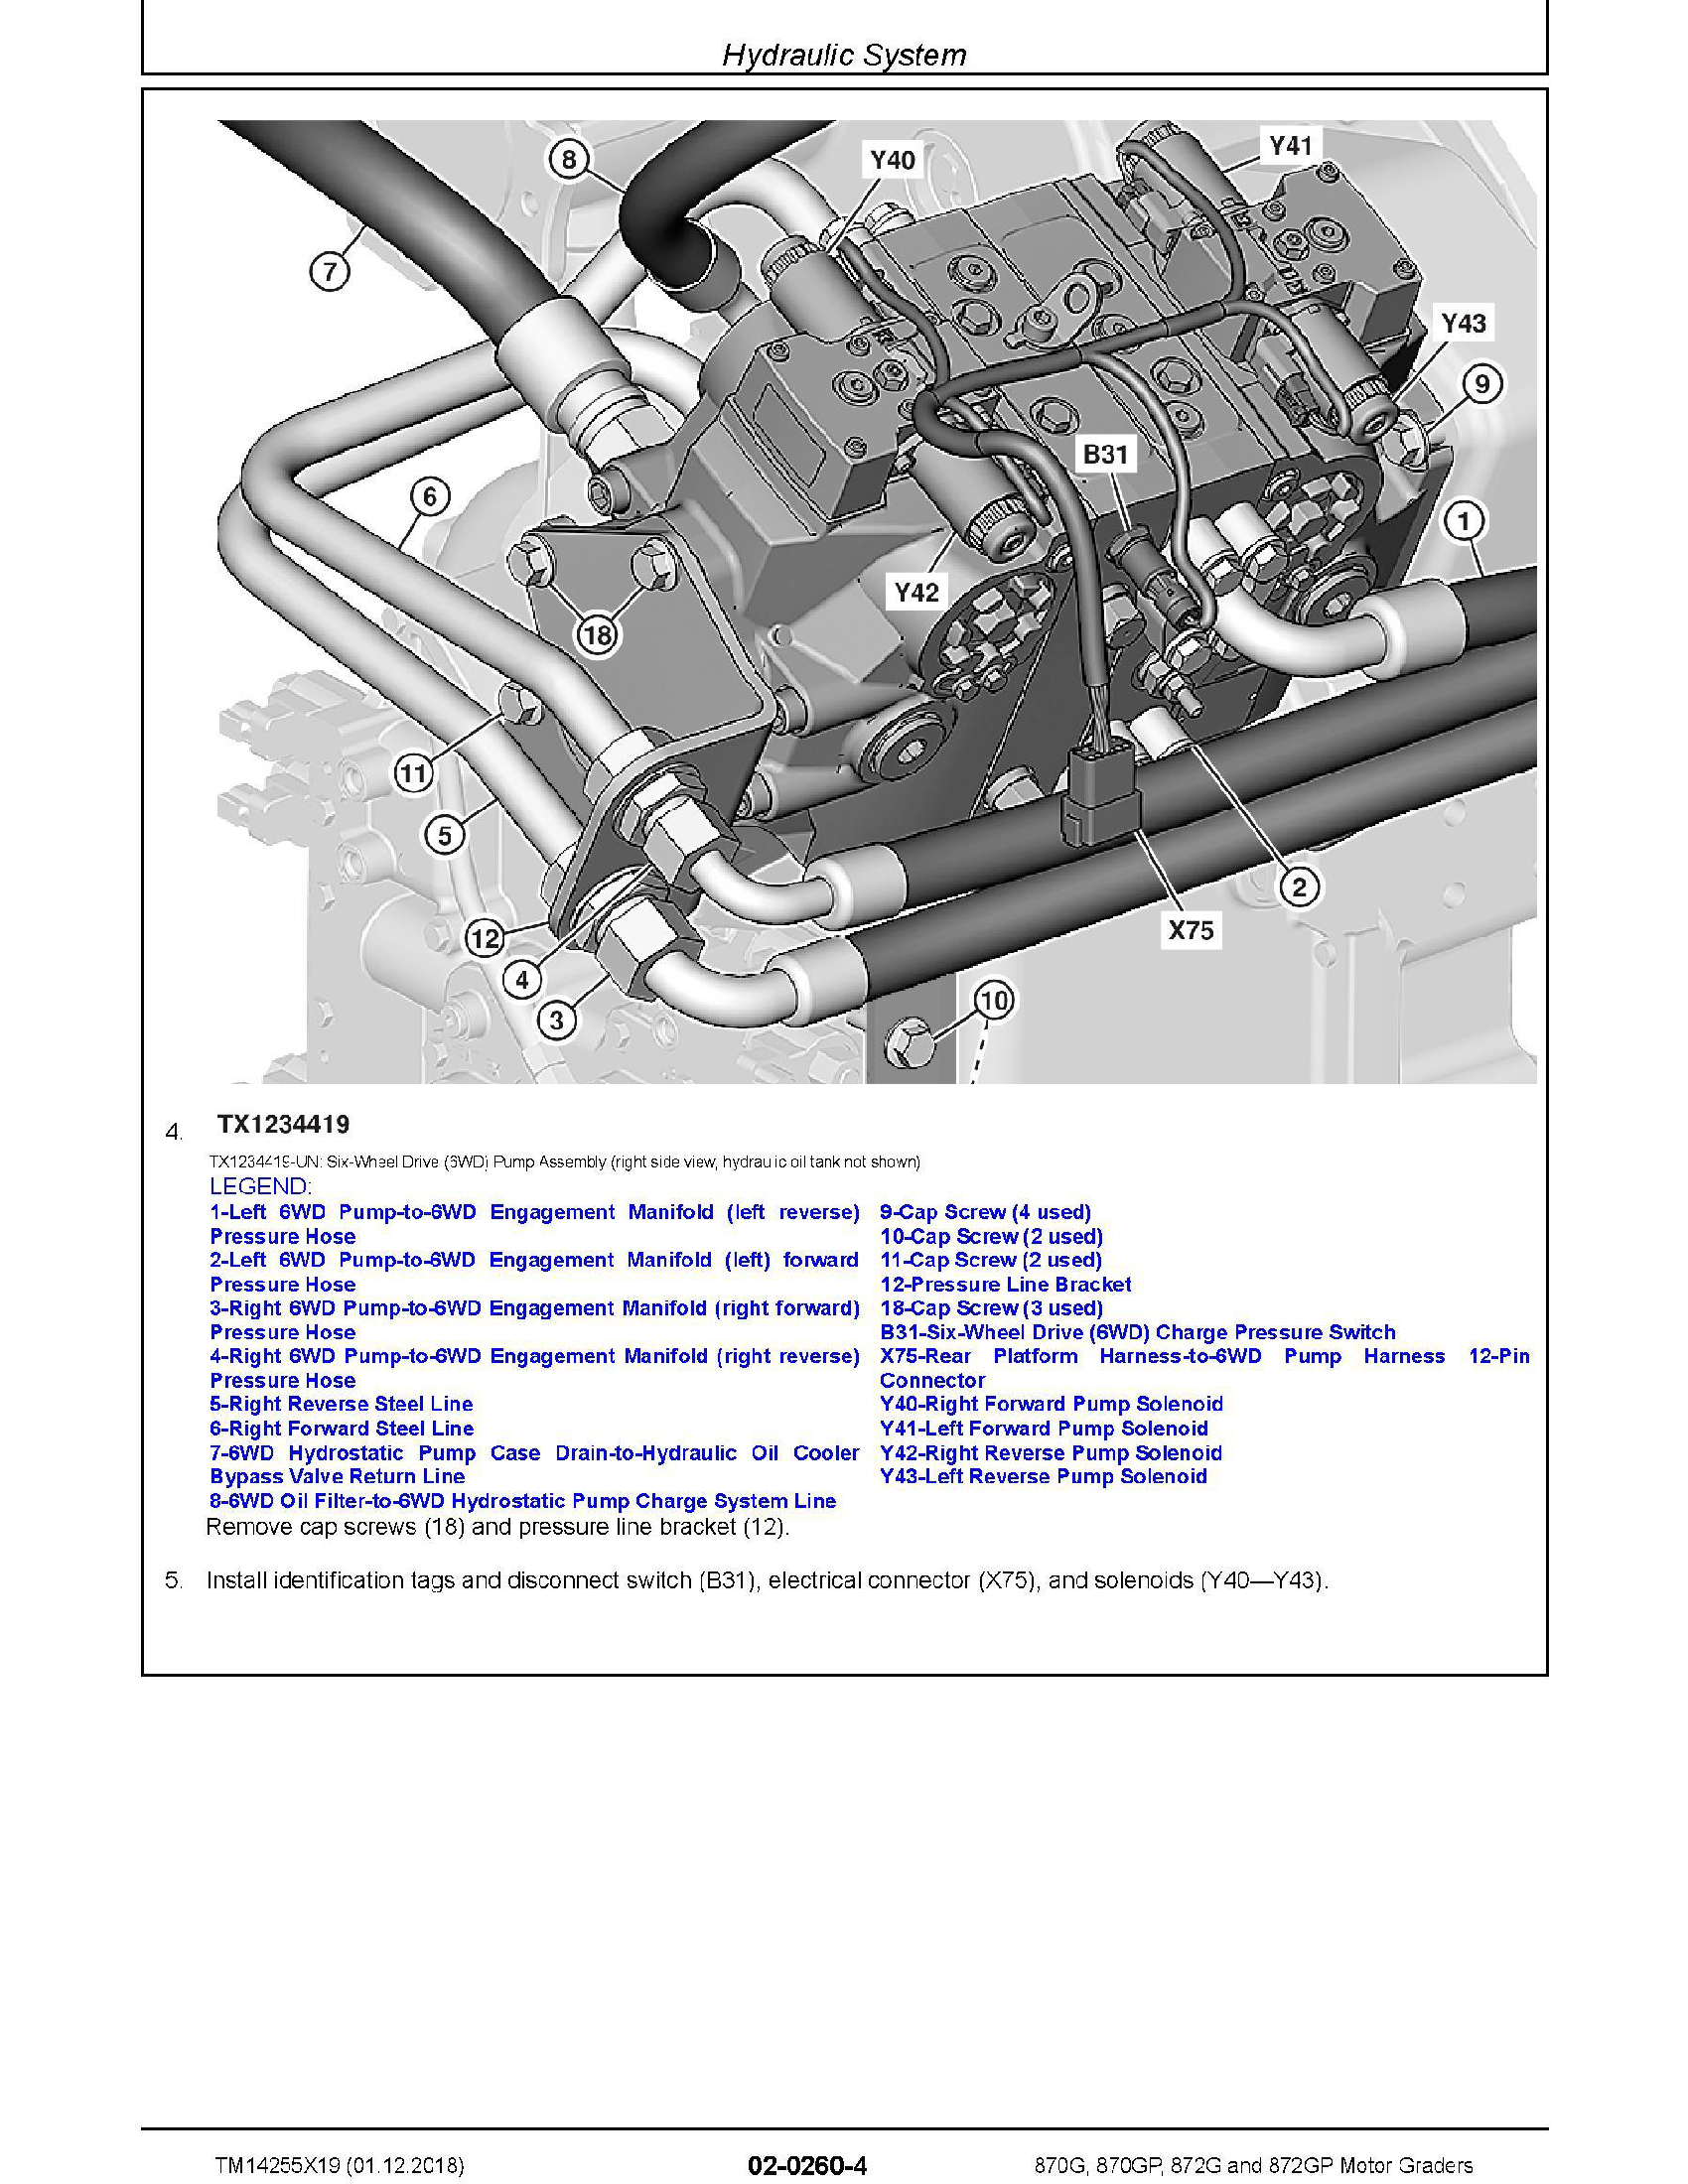 John Deere 6430 manual pdf